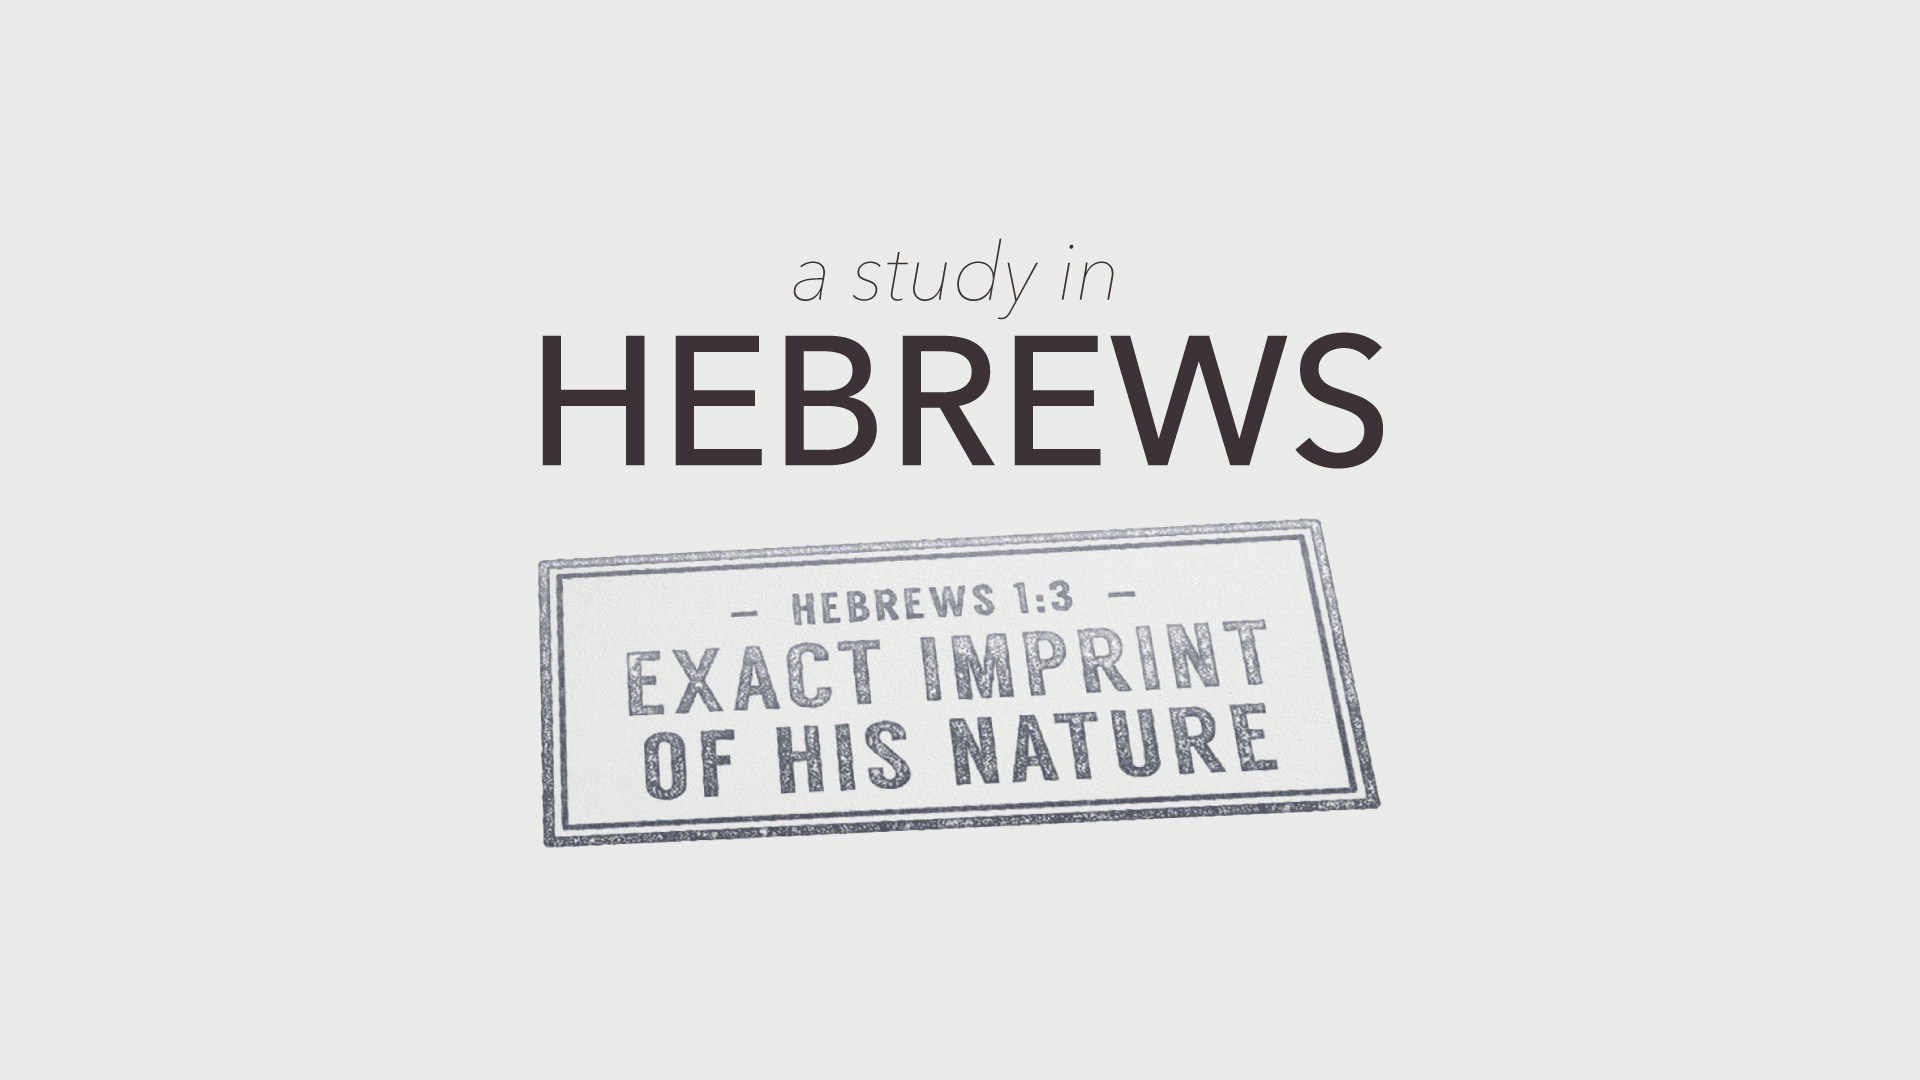 A Study in Hebrews